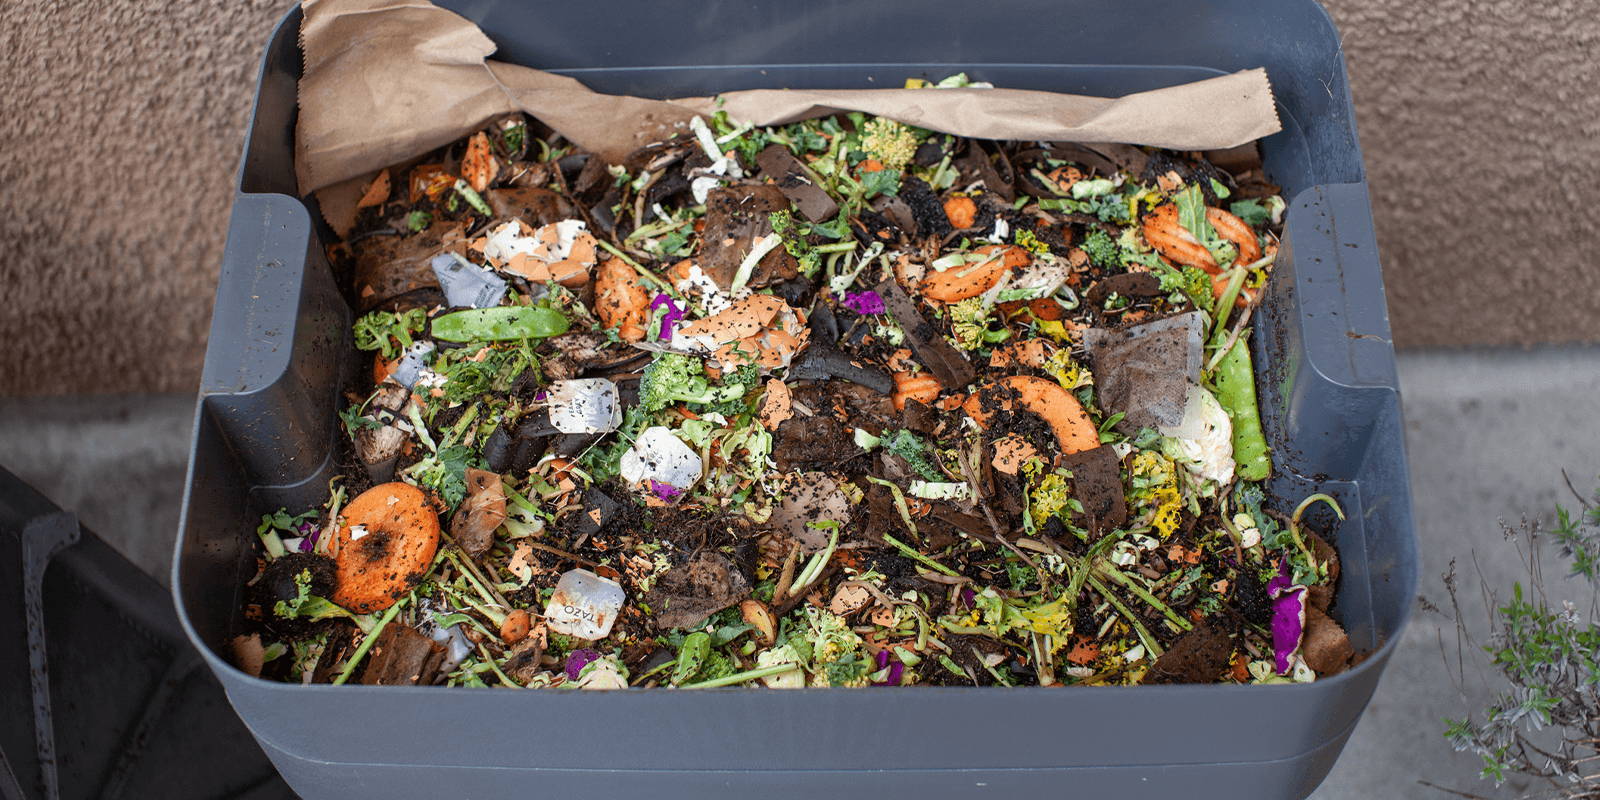 Outdoor compost bin.